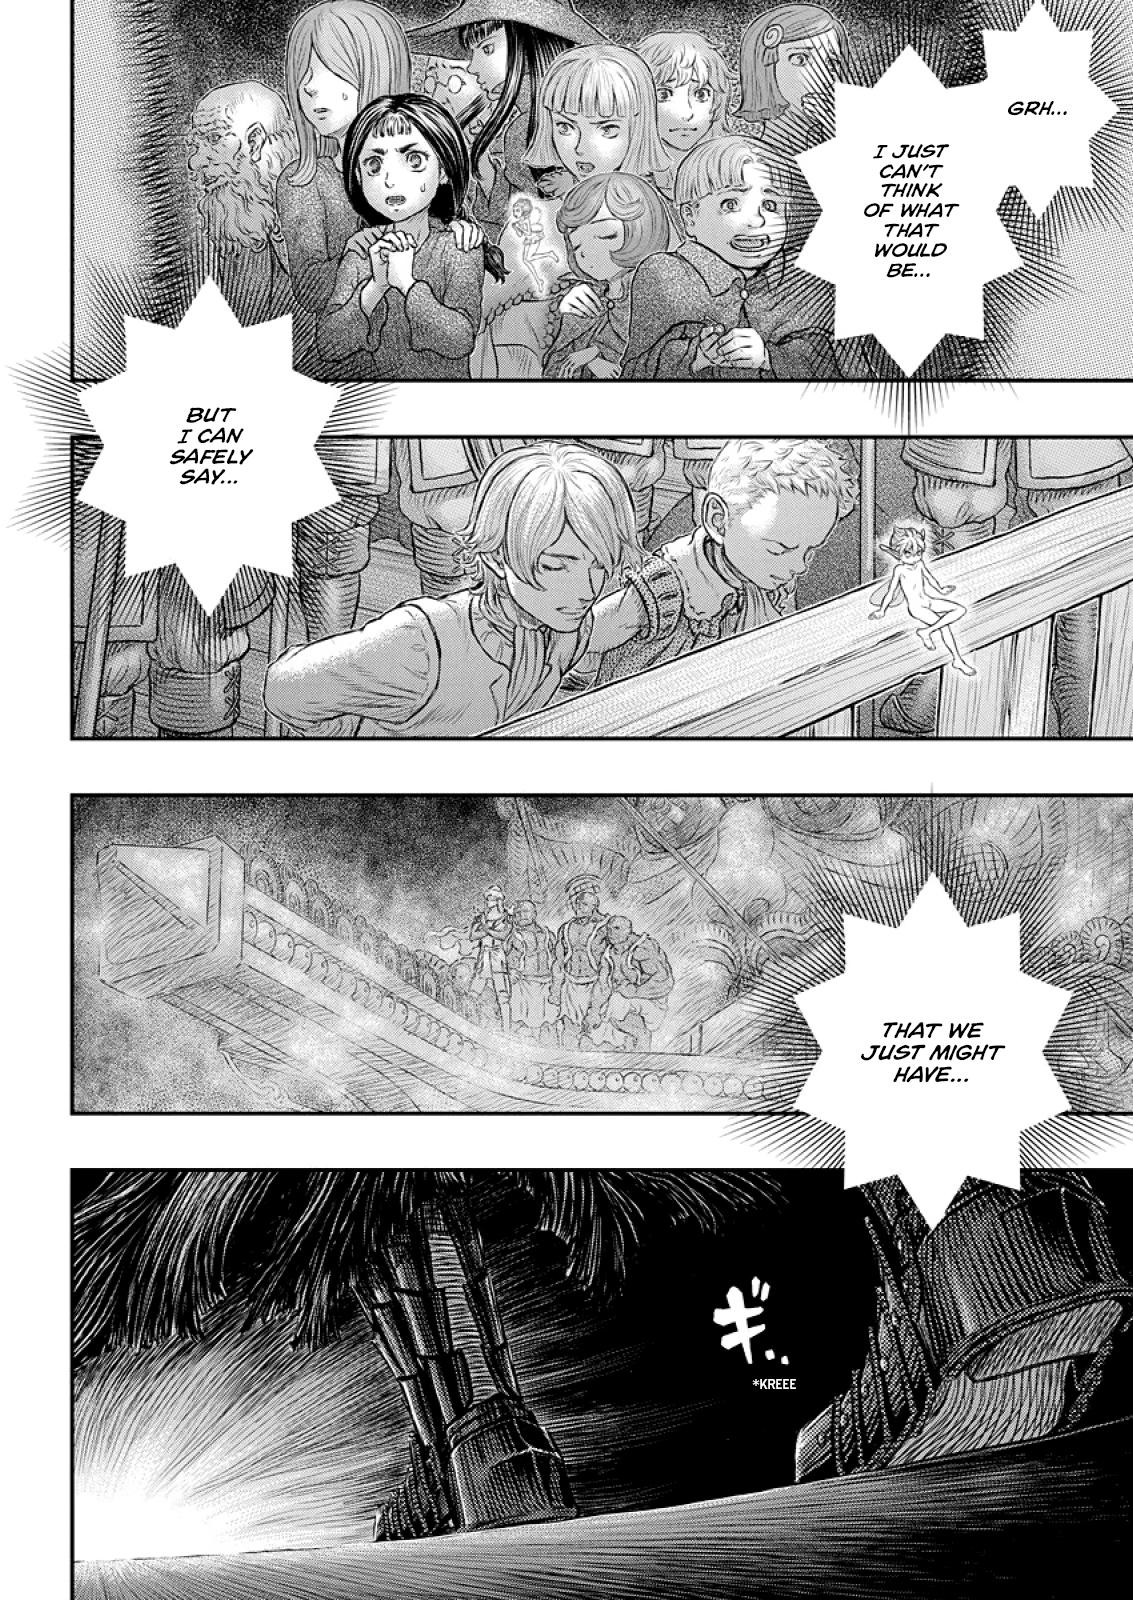 Berserk Manga Chapter 374 image 21